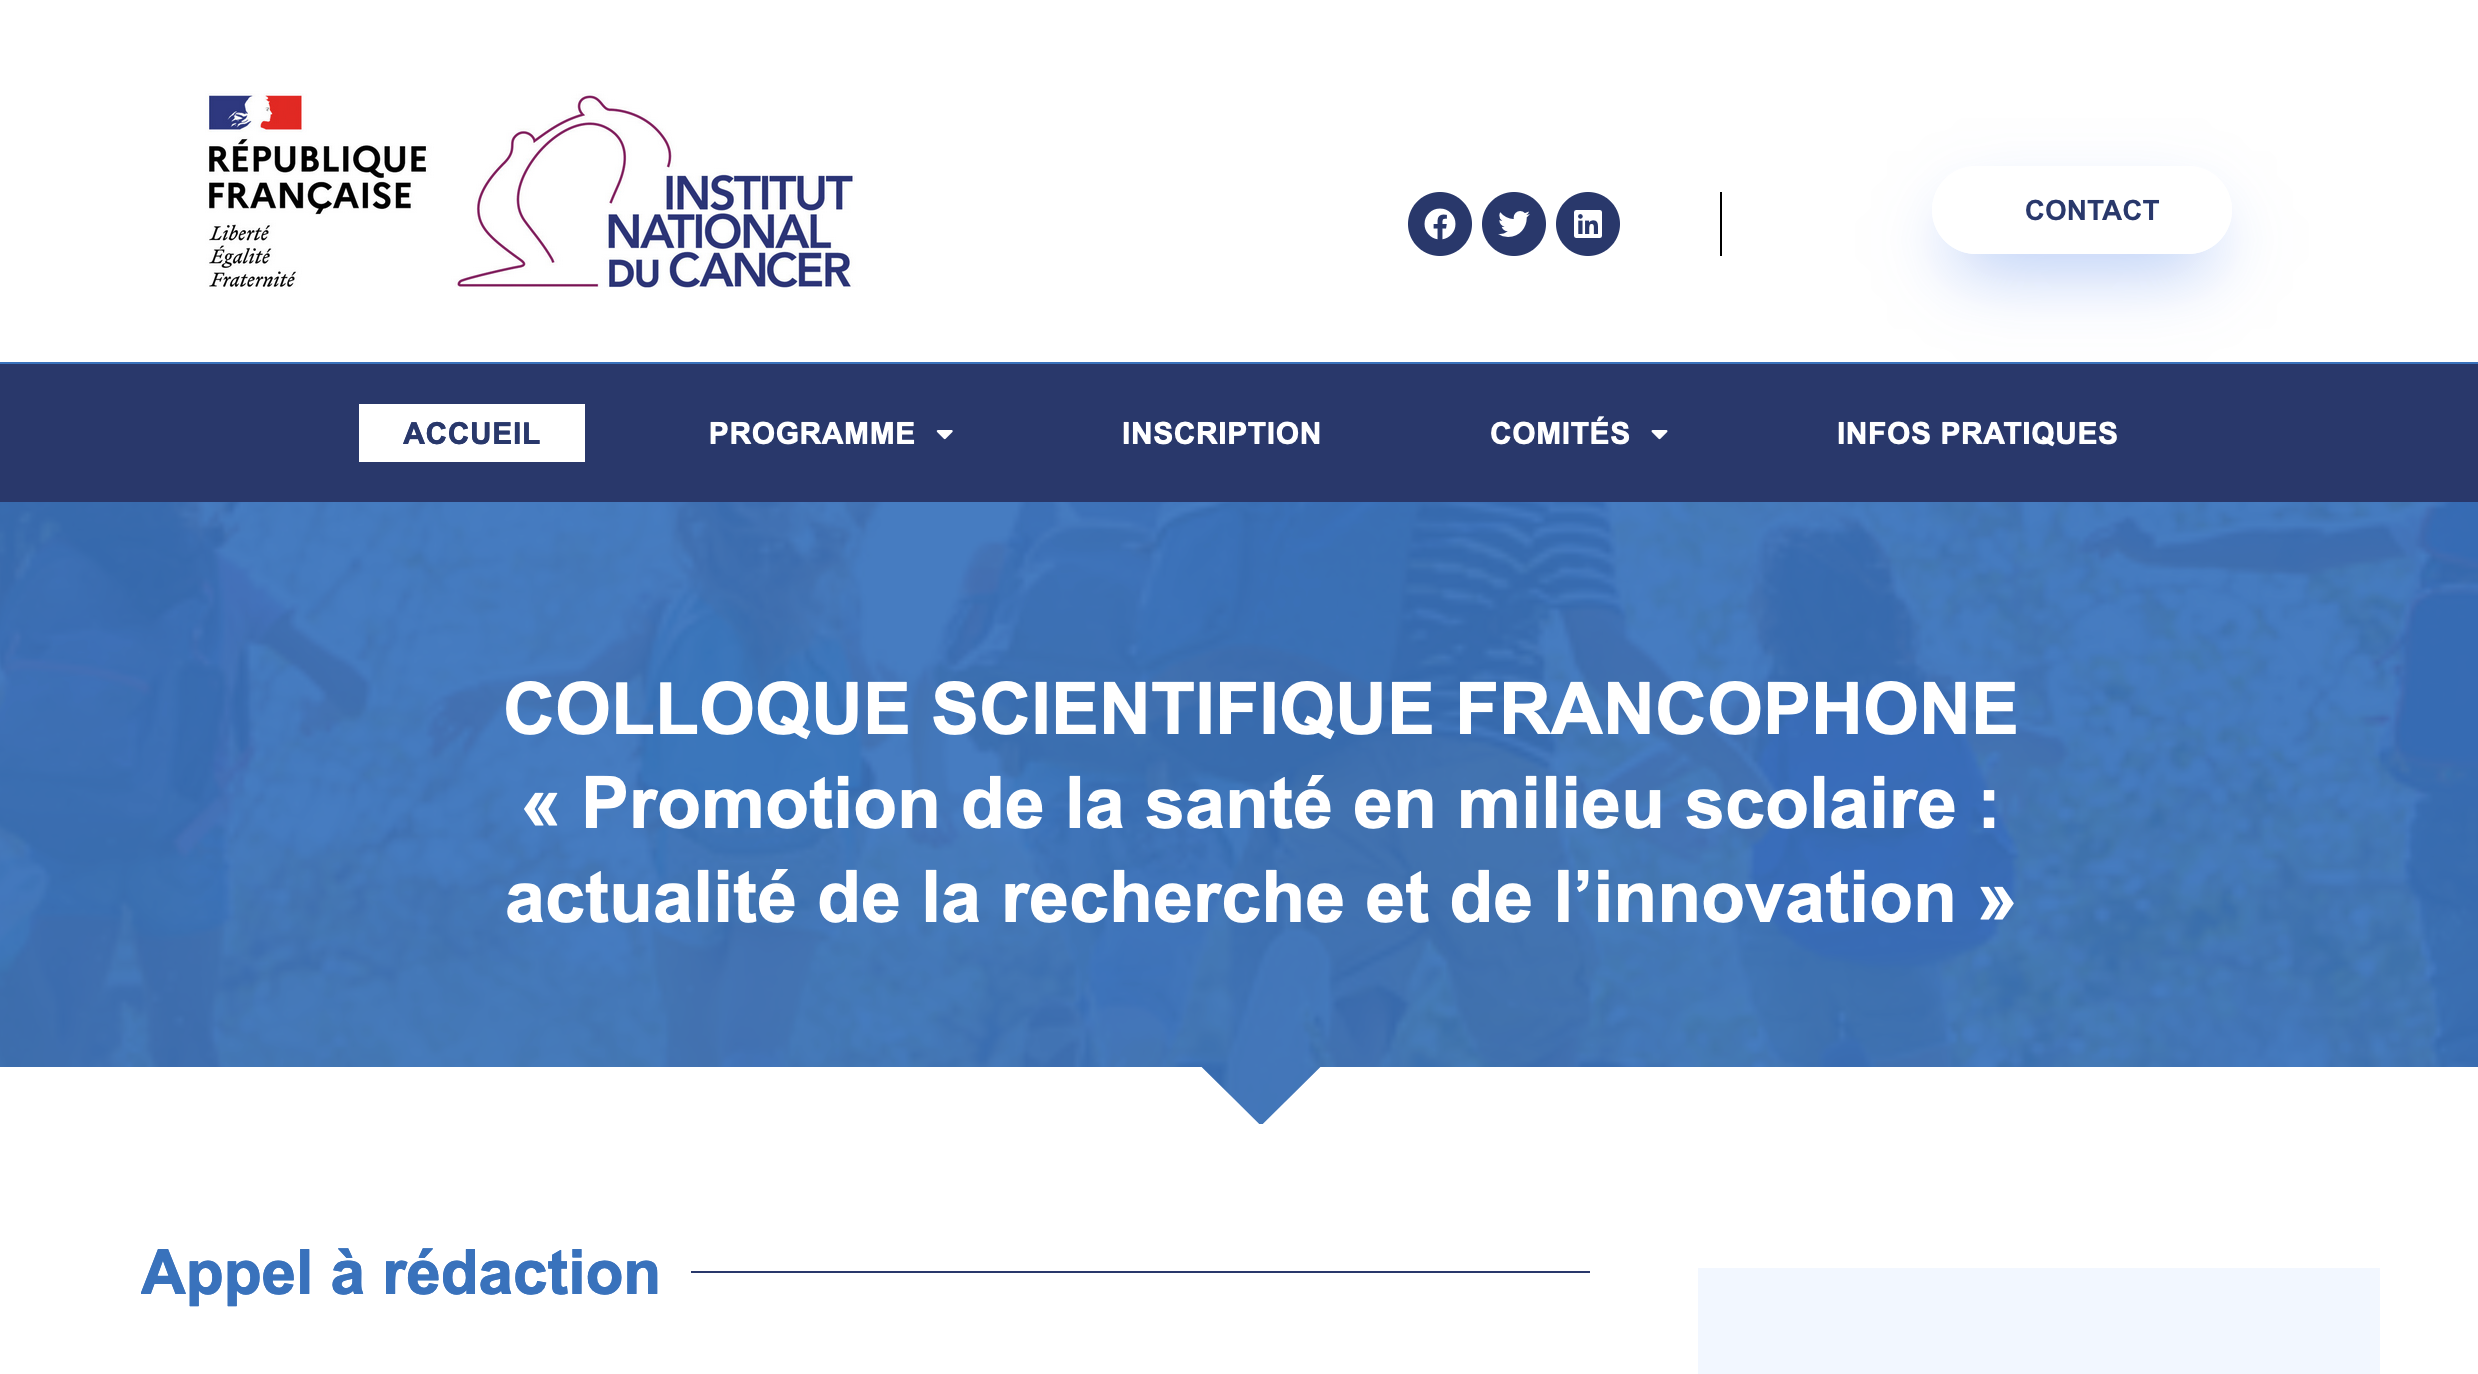 Colloque scientifique francophone